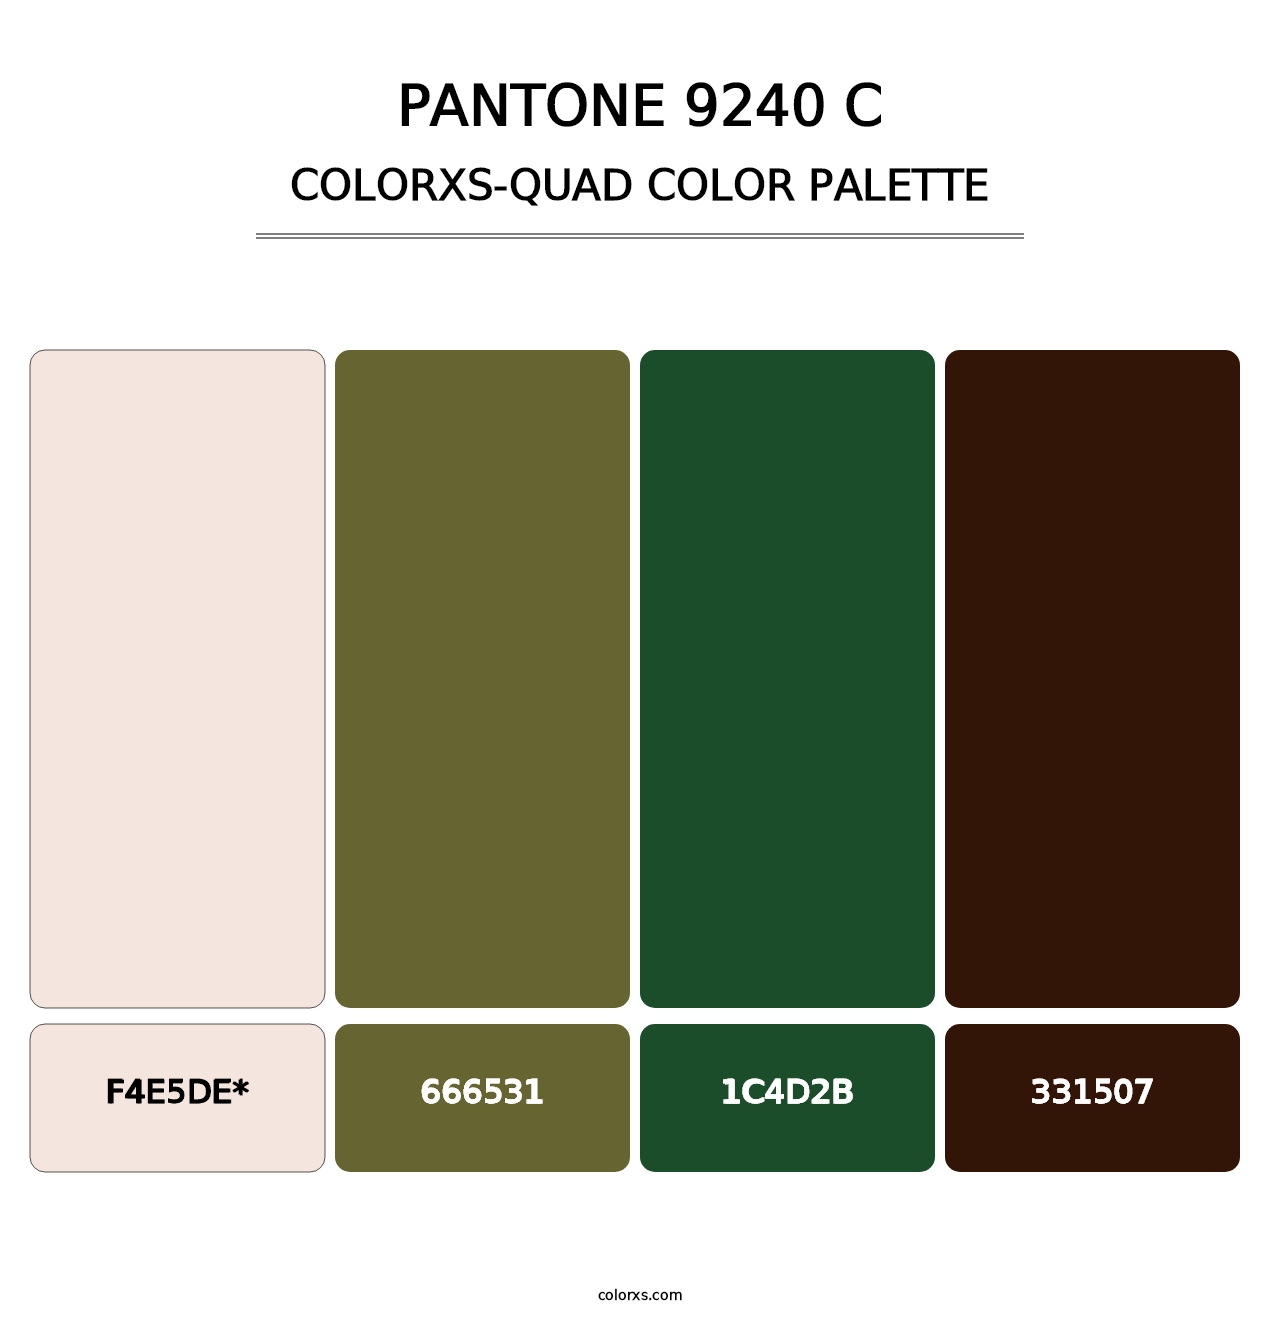 PANTONE 9240 C - Colorxs Quad Palette